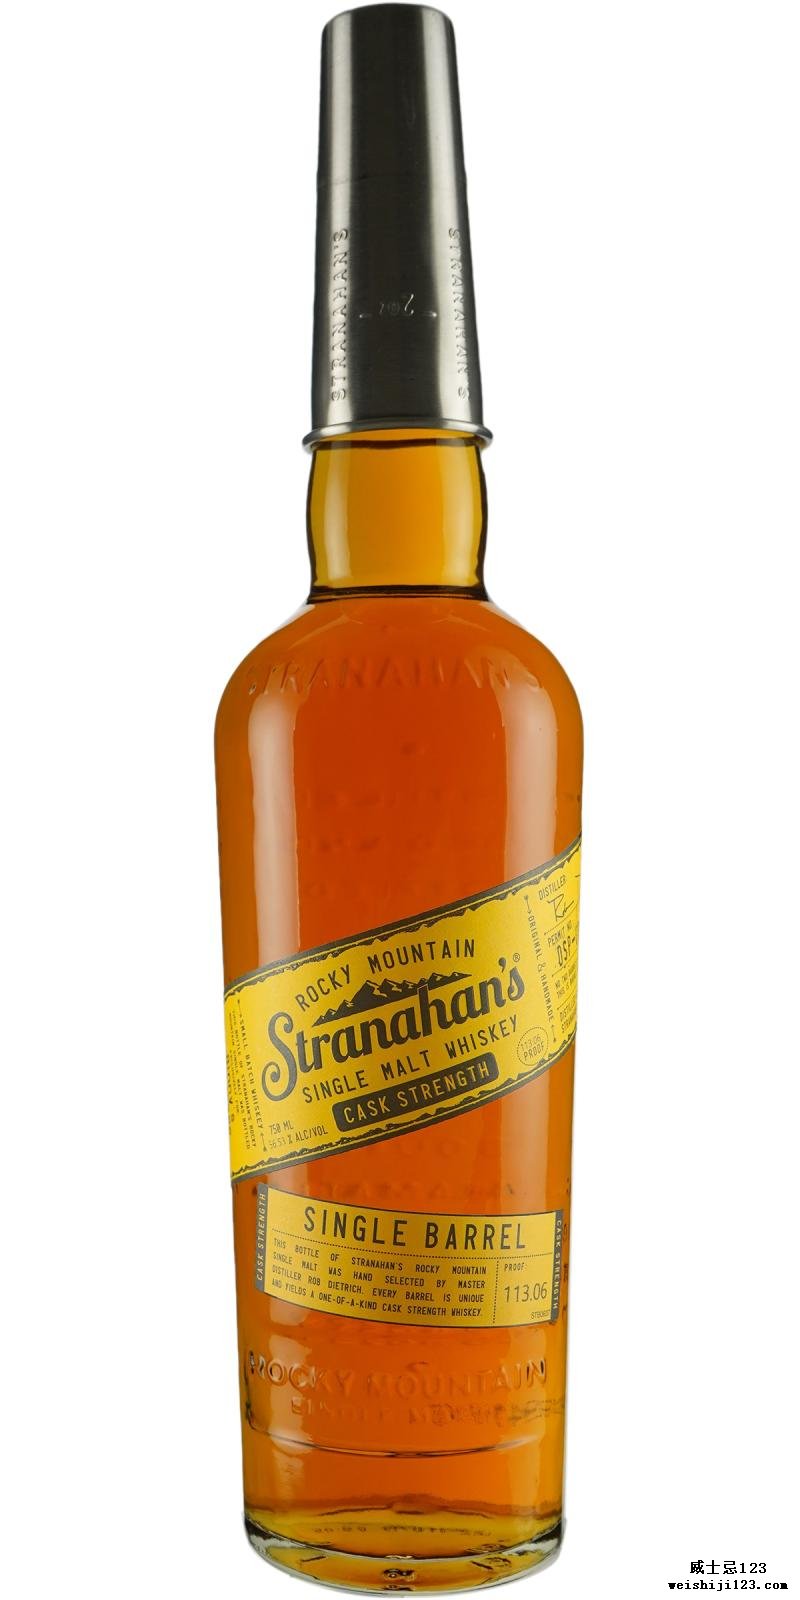 Stranahan's Straight Colorado Whiskey